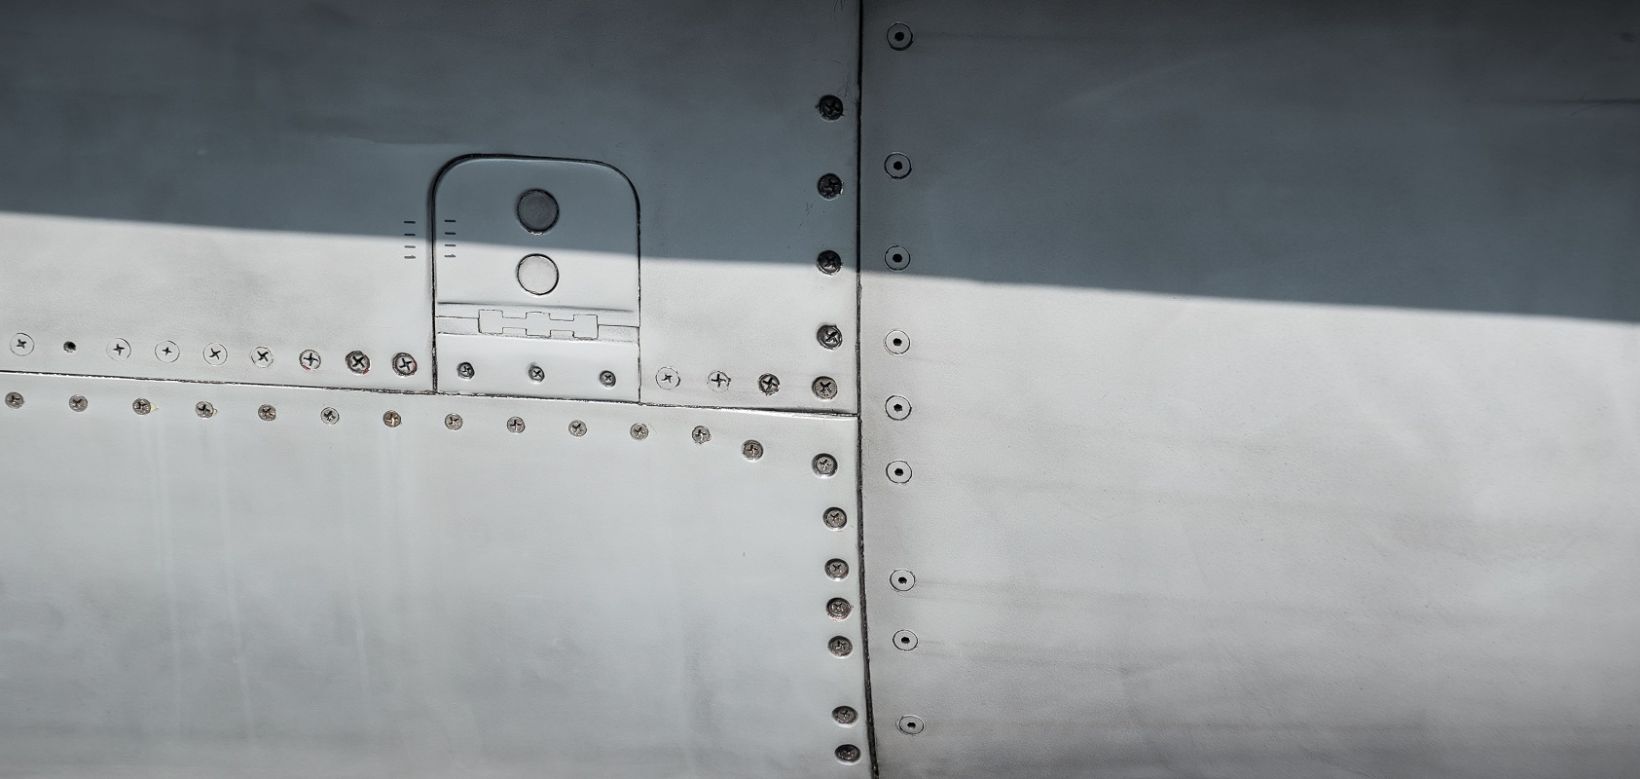 图1. 使用MiniMite旋转螺栓孔扫查器和NORTEC系列涡流探伤仪检测飞机上的紧固件孔。